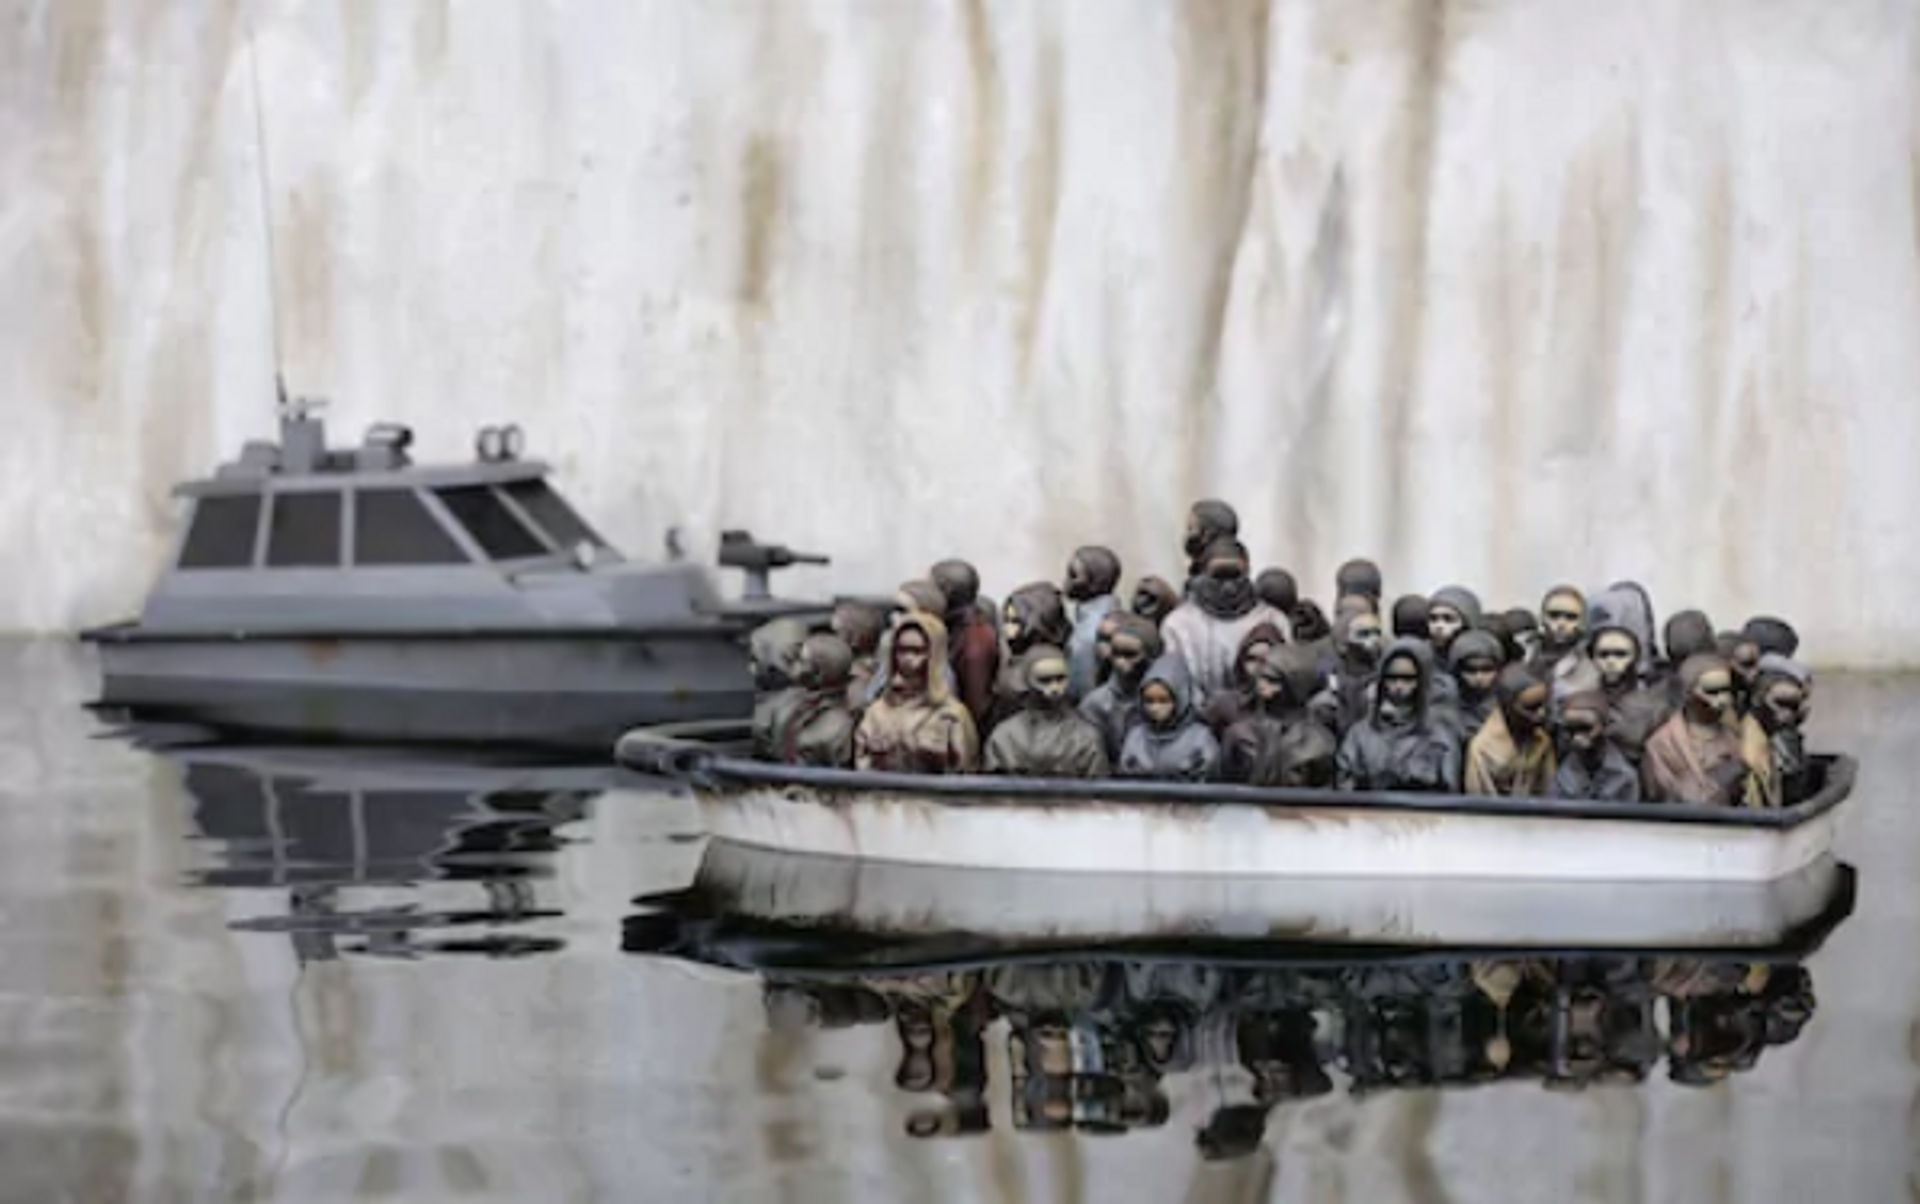 Banksy Boat raffle gewoonvoorhem 2